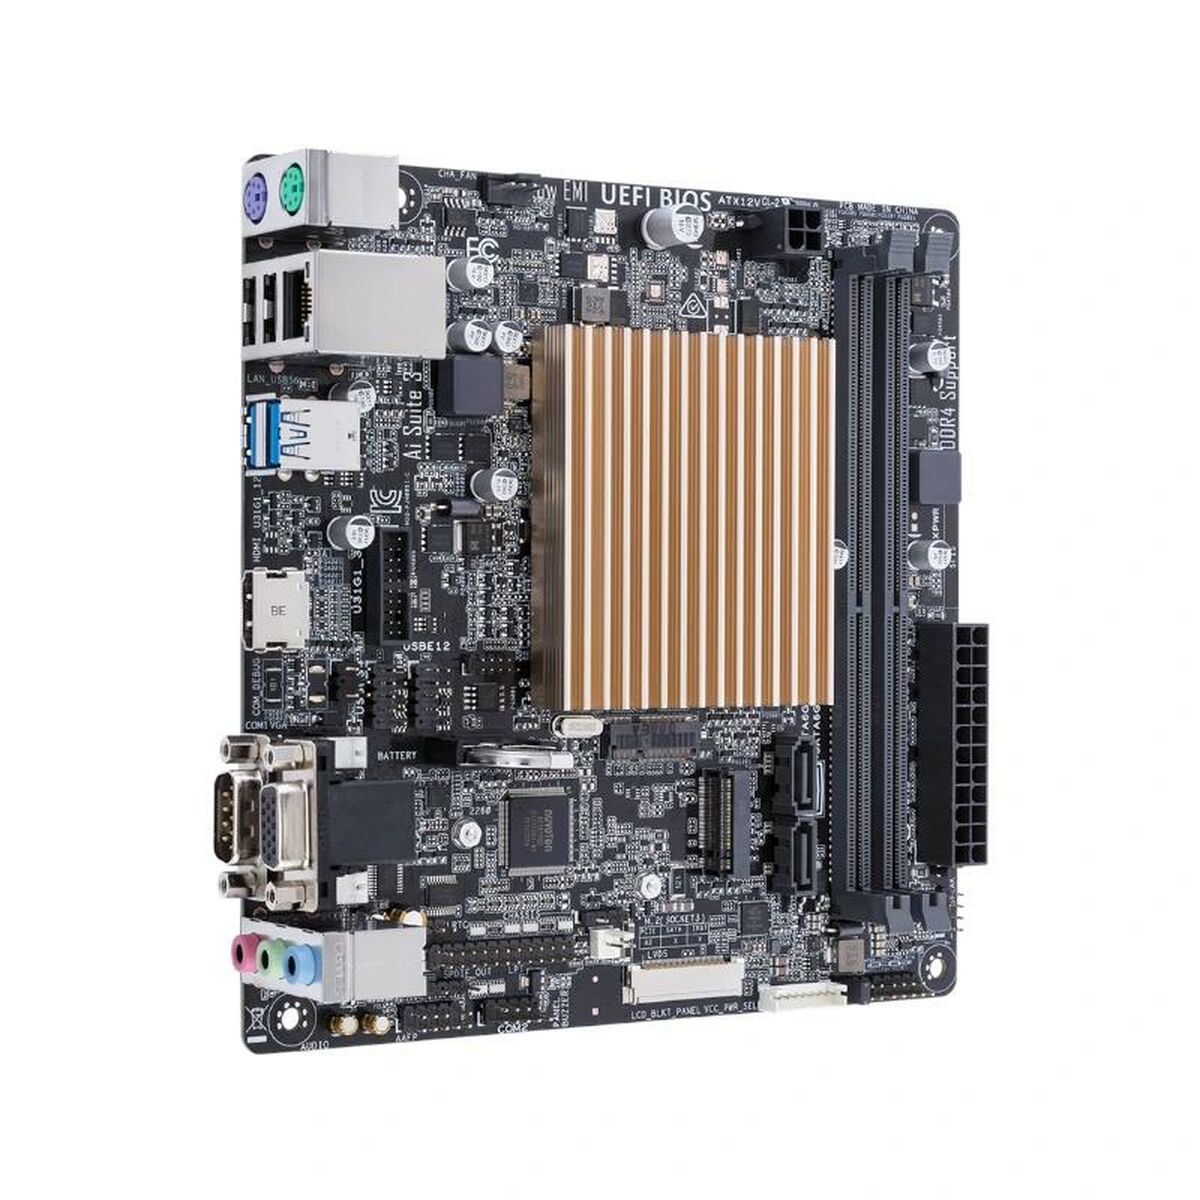 Asus PRIME J4005I-C Mini-ITX LGA 1151 Intel Motherboard